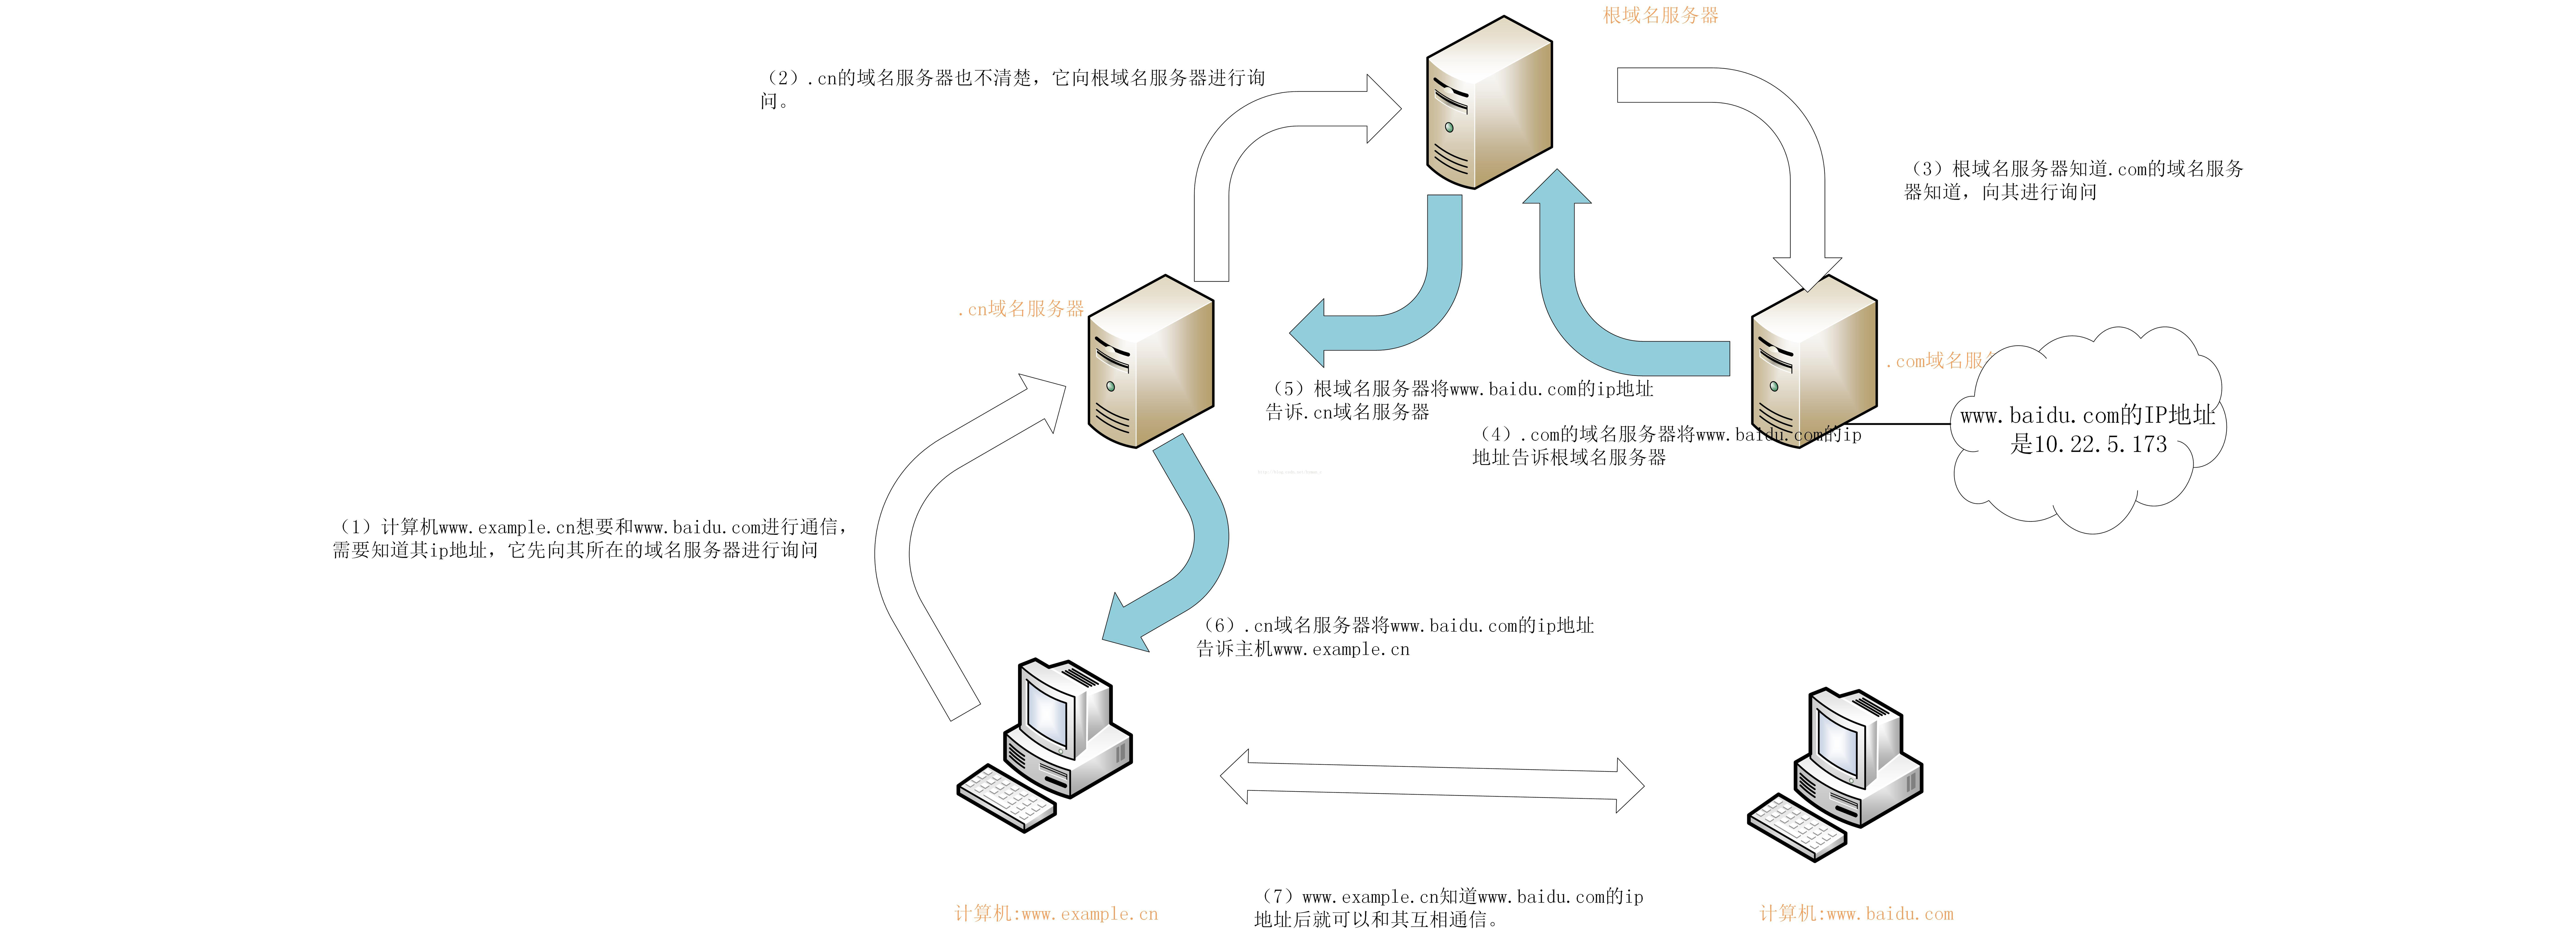 一张图解释DNS域名服务器的作用